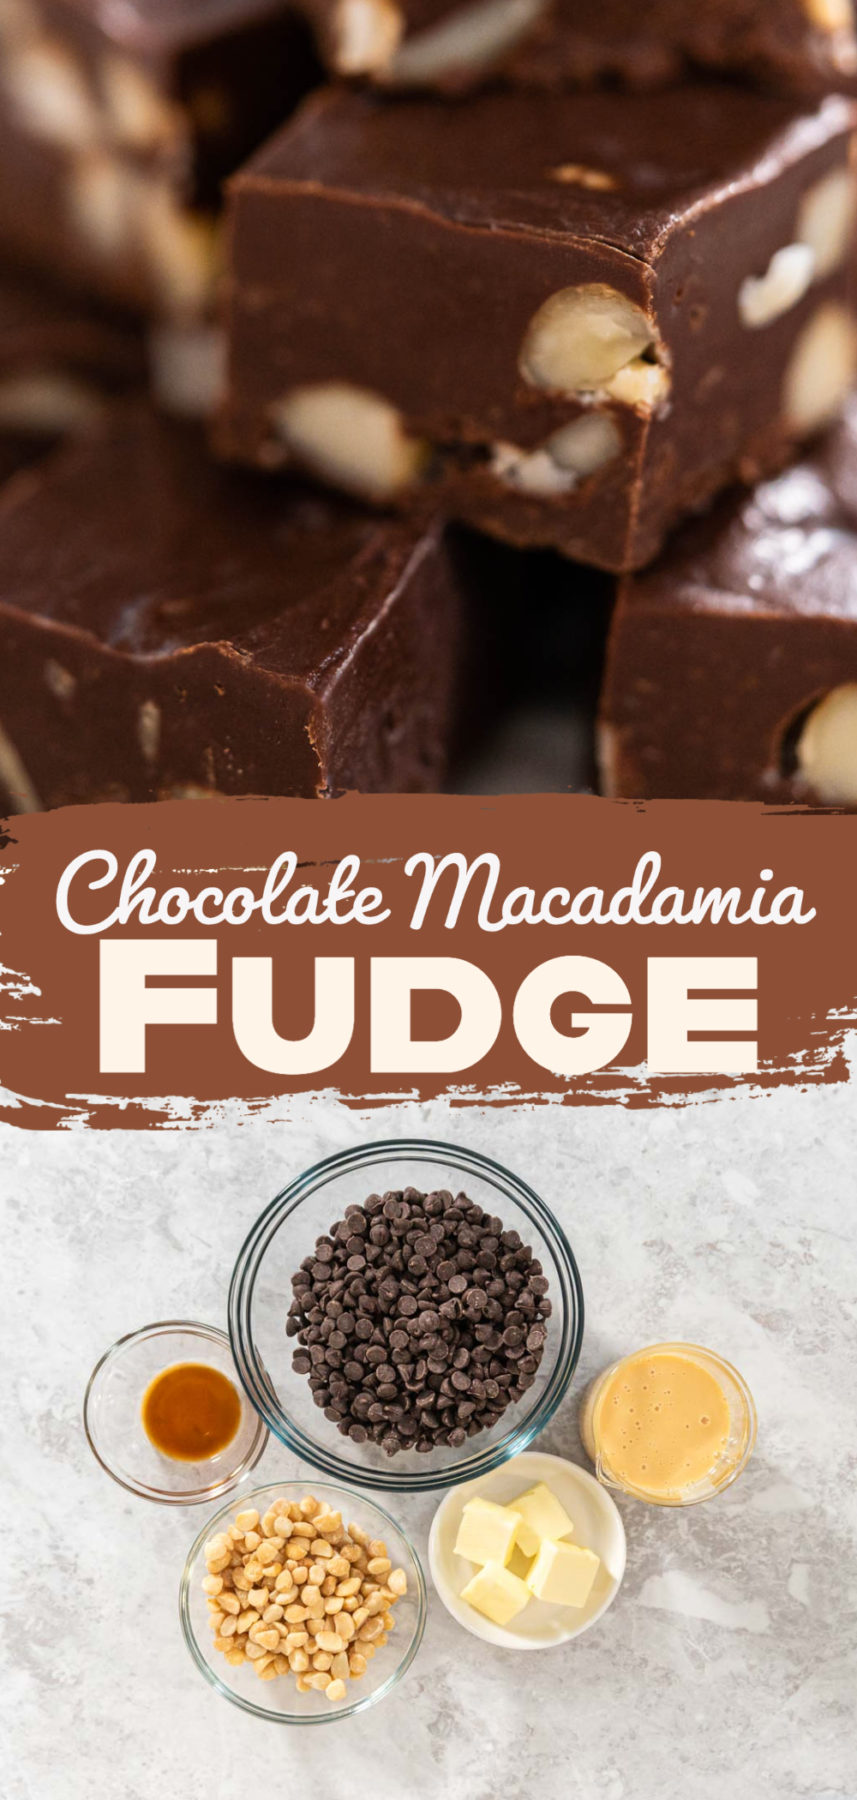 Chocolate Macadamia Fudge